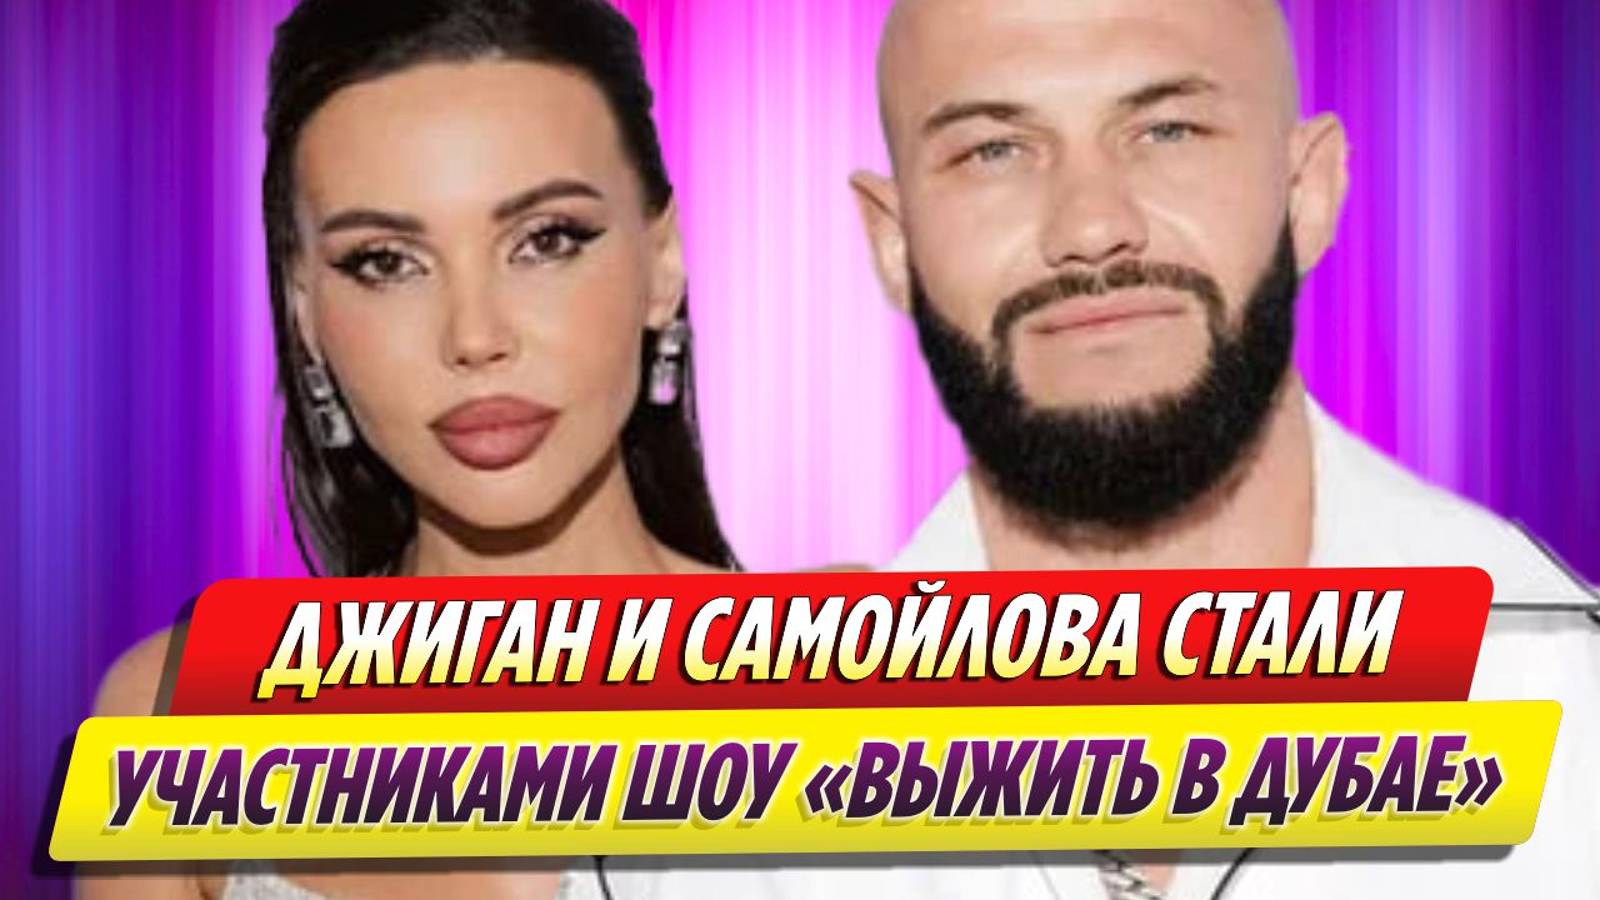 Джиган и Оксана Самойлова стали участниками шоу «Выжить в Дубае»